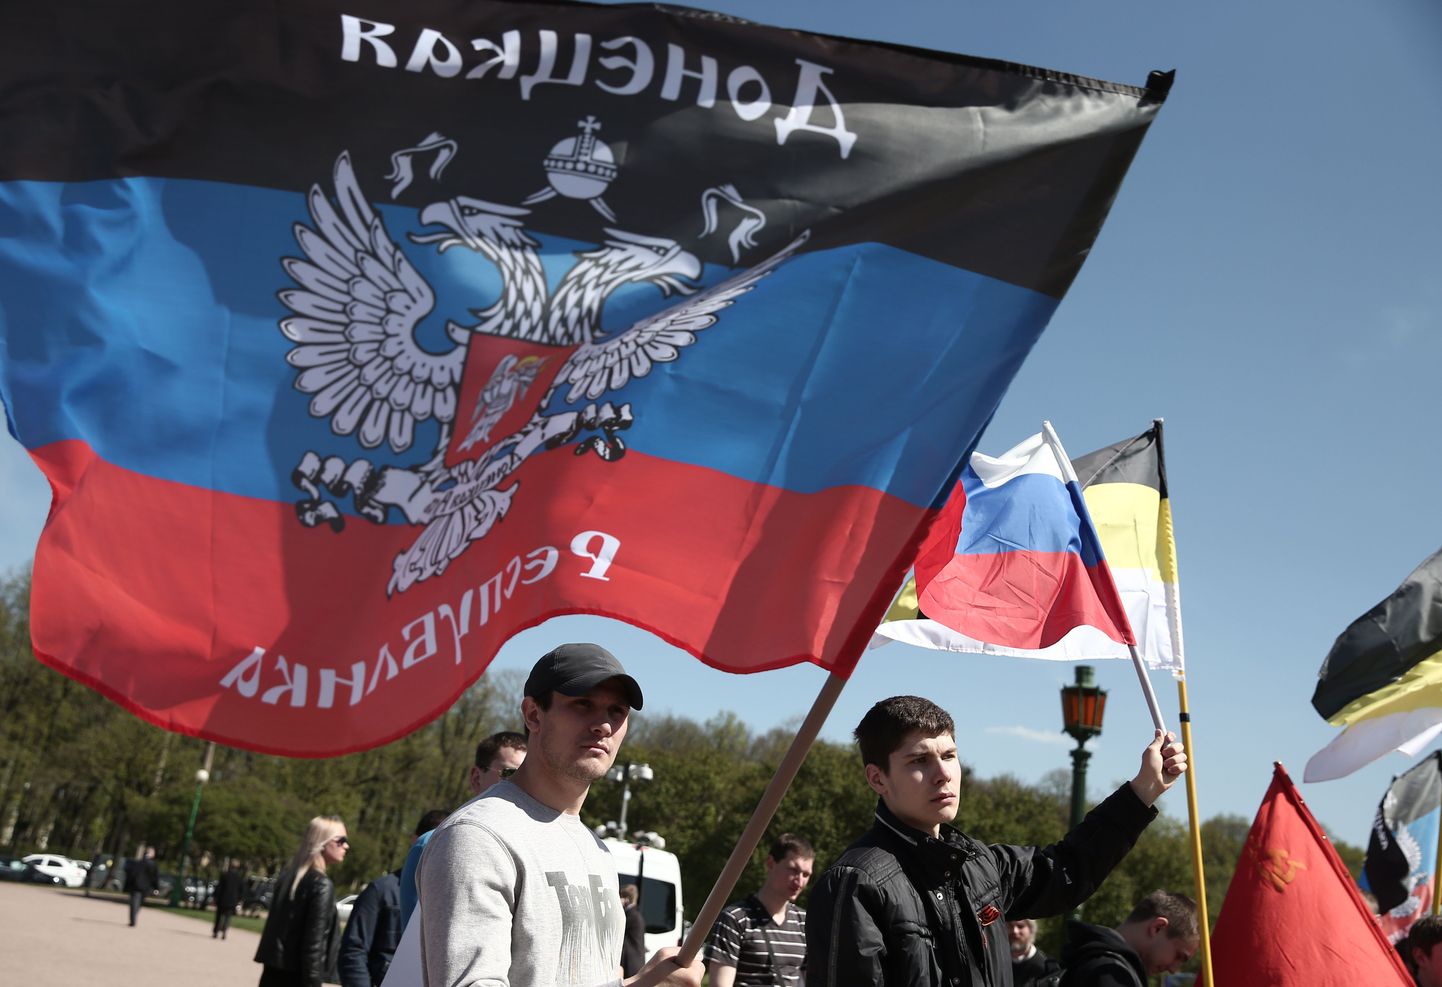 Eile tulid Peterburis tänavale Donetski nn rahvavabariigi lipuga protestijad, kes avaldasid toetust Ukraina idaosas toimunud nn referendumitele.